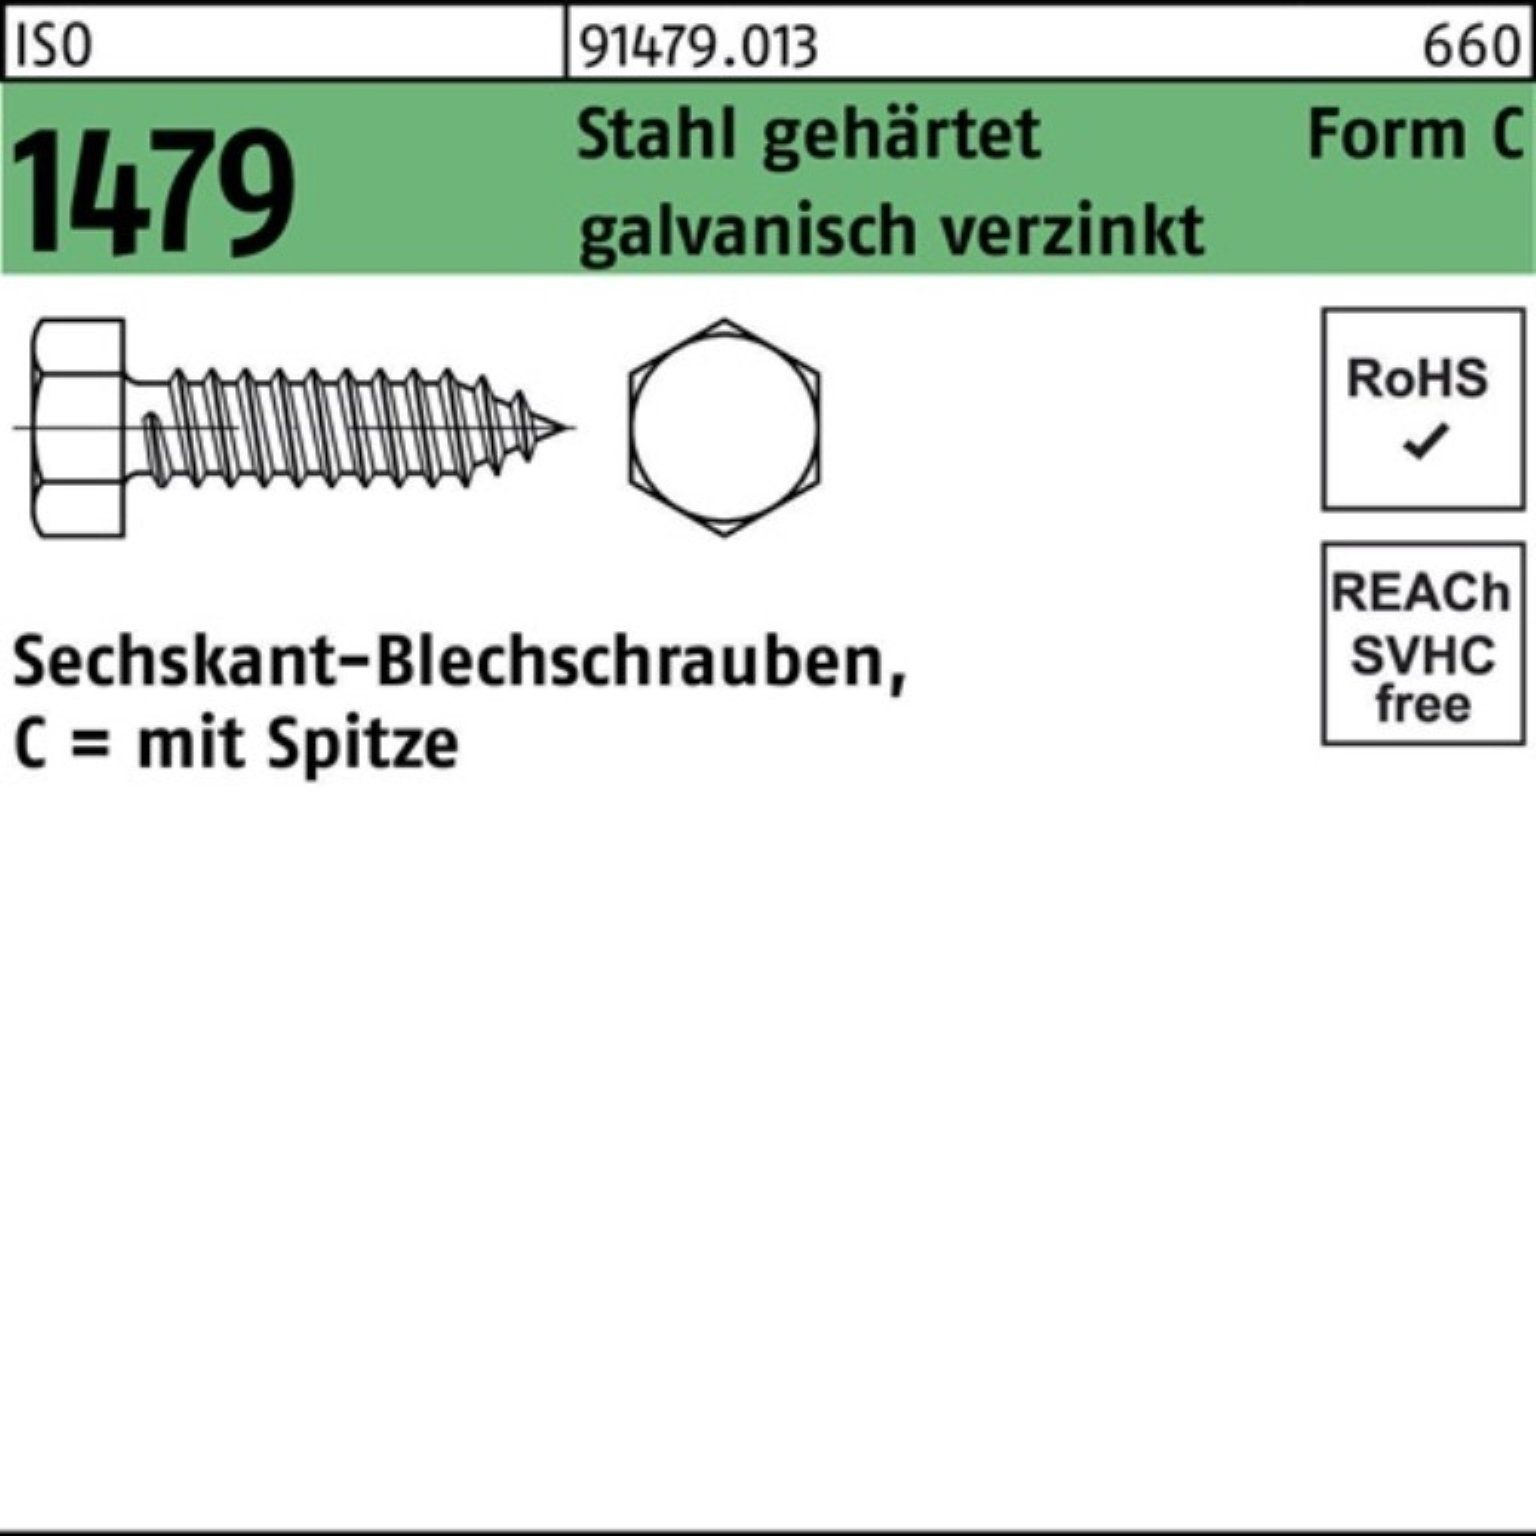 Pack Reyher Blechschraube 1000er C 1479 gehärt Stahl Spitze/6-kt 4,2x9,5 ISO Blechschraube